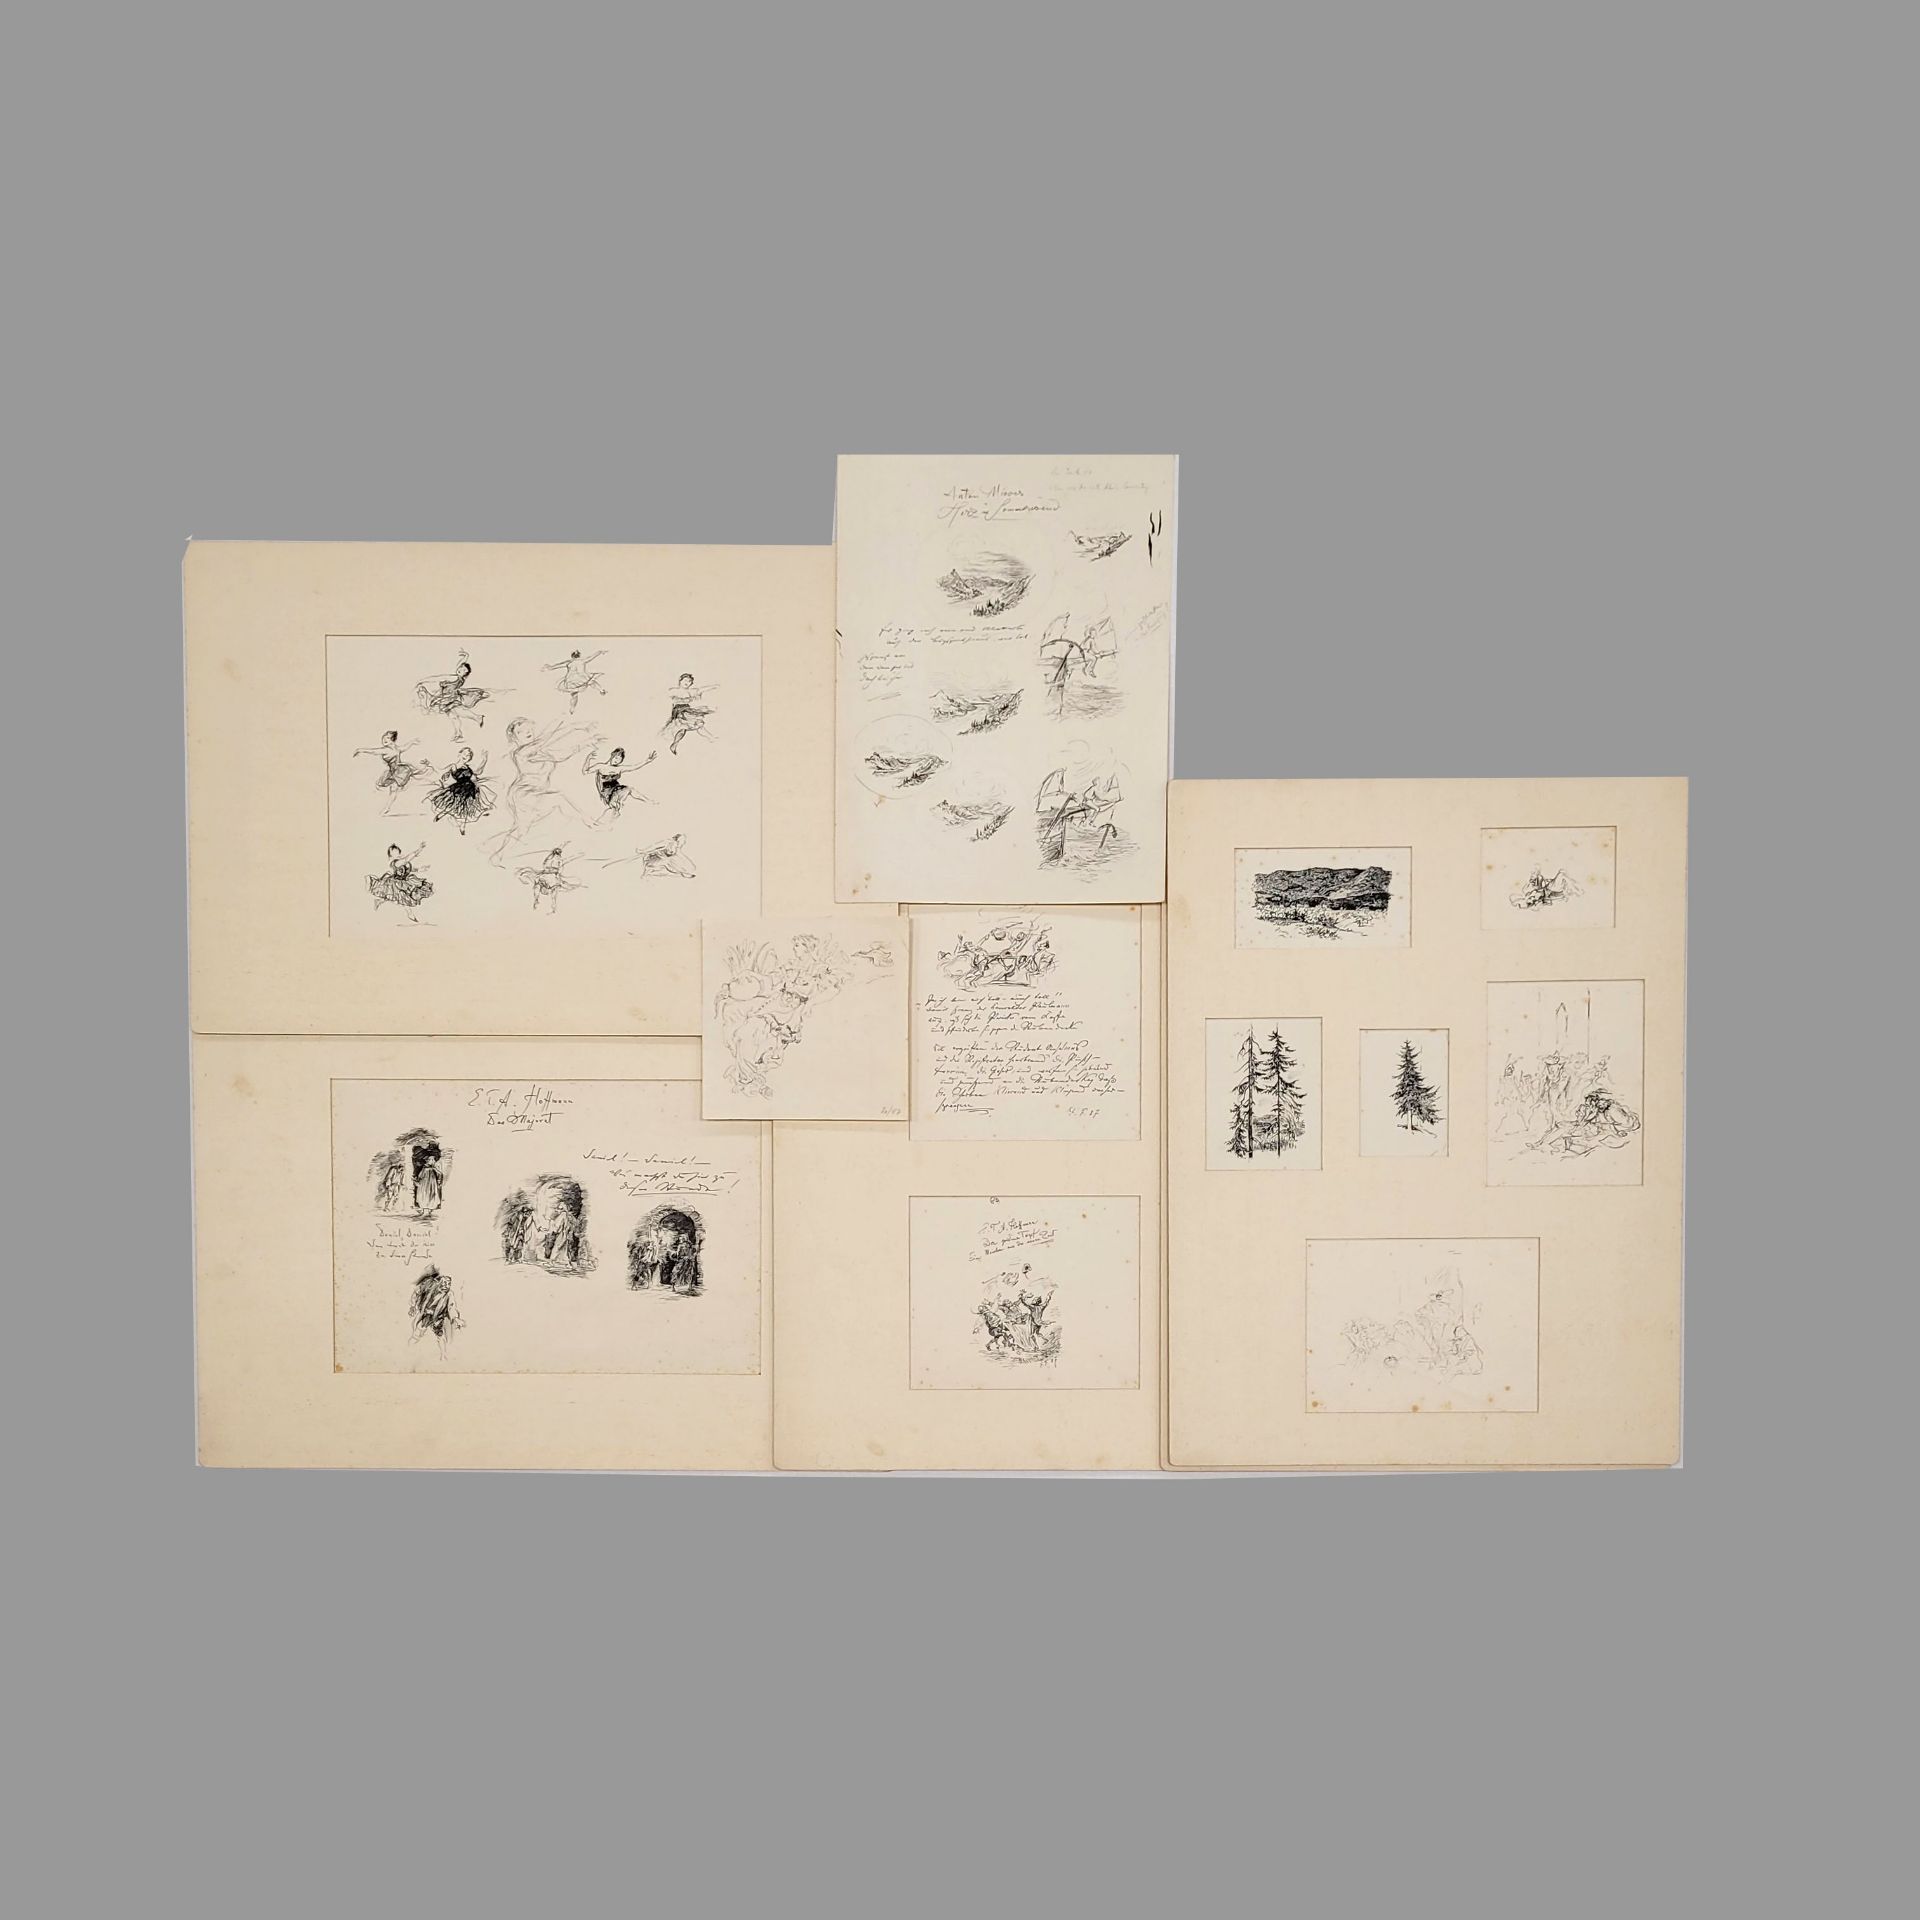 FISCHER, Fritz: Mappe mit Illustrationen zu Poe, Hoffmann und Hauff und andere Themen